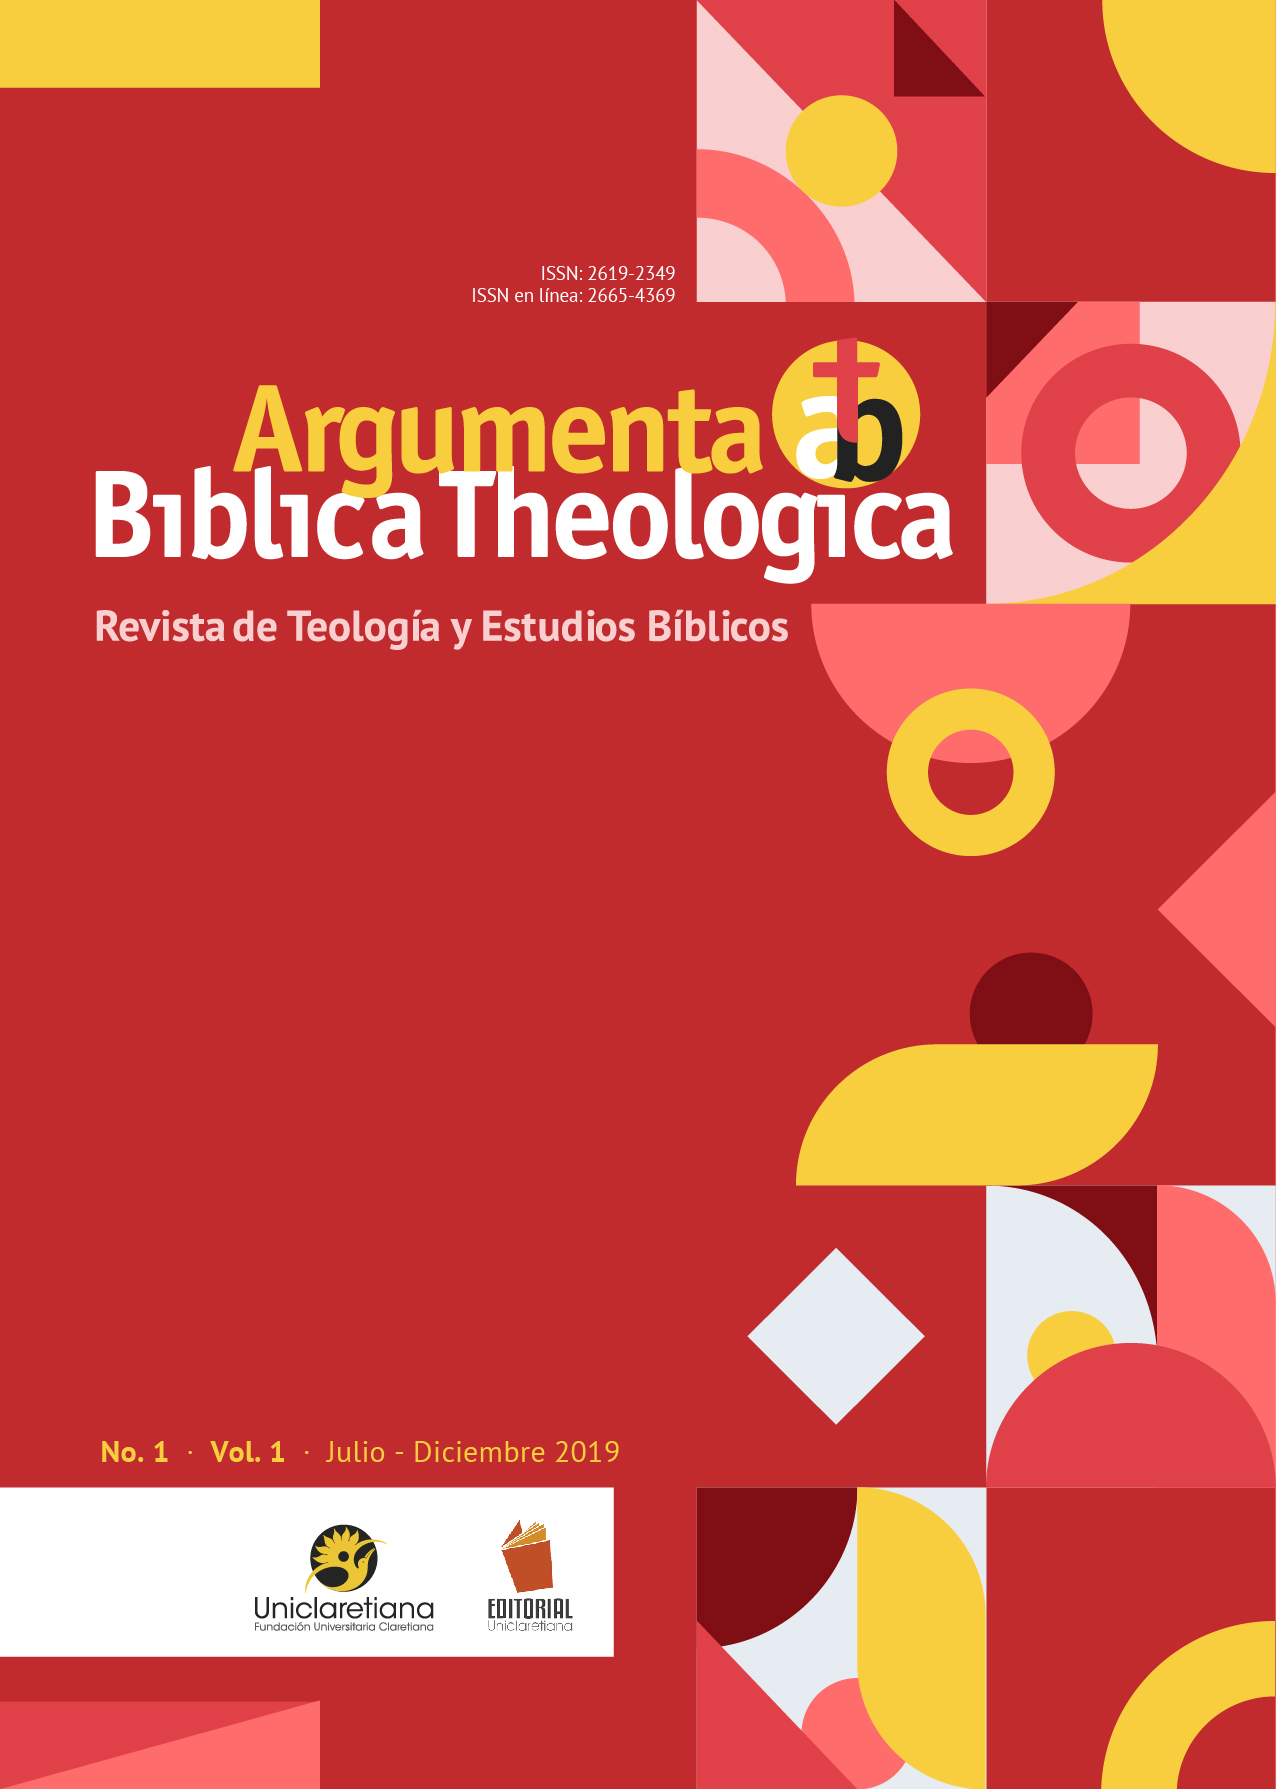 Revista Argumenta Bíblica Theologica